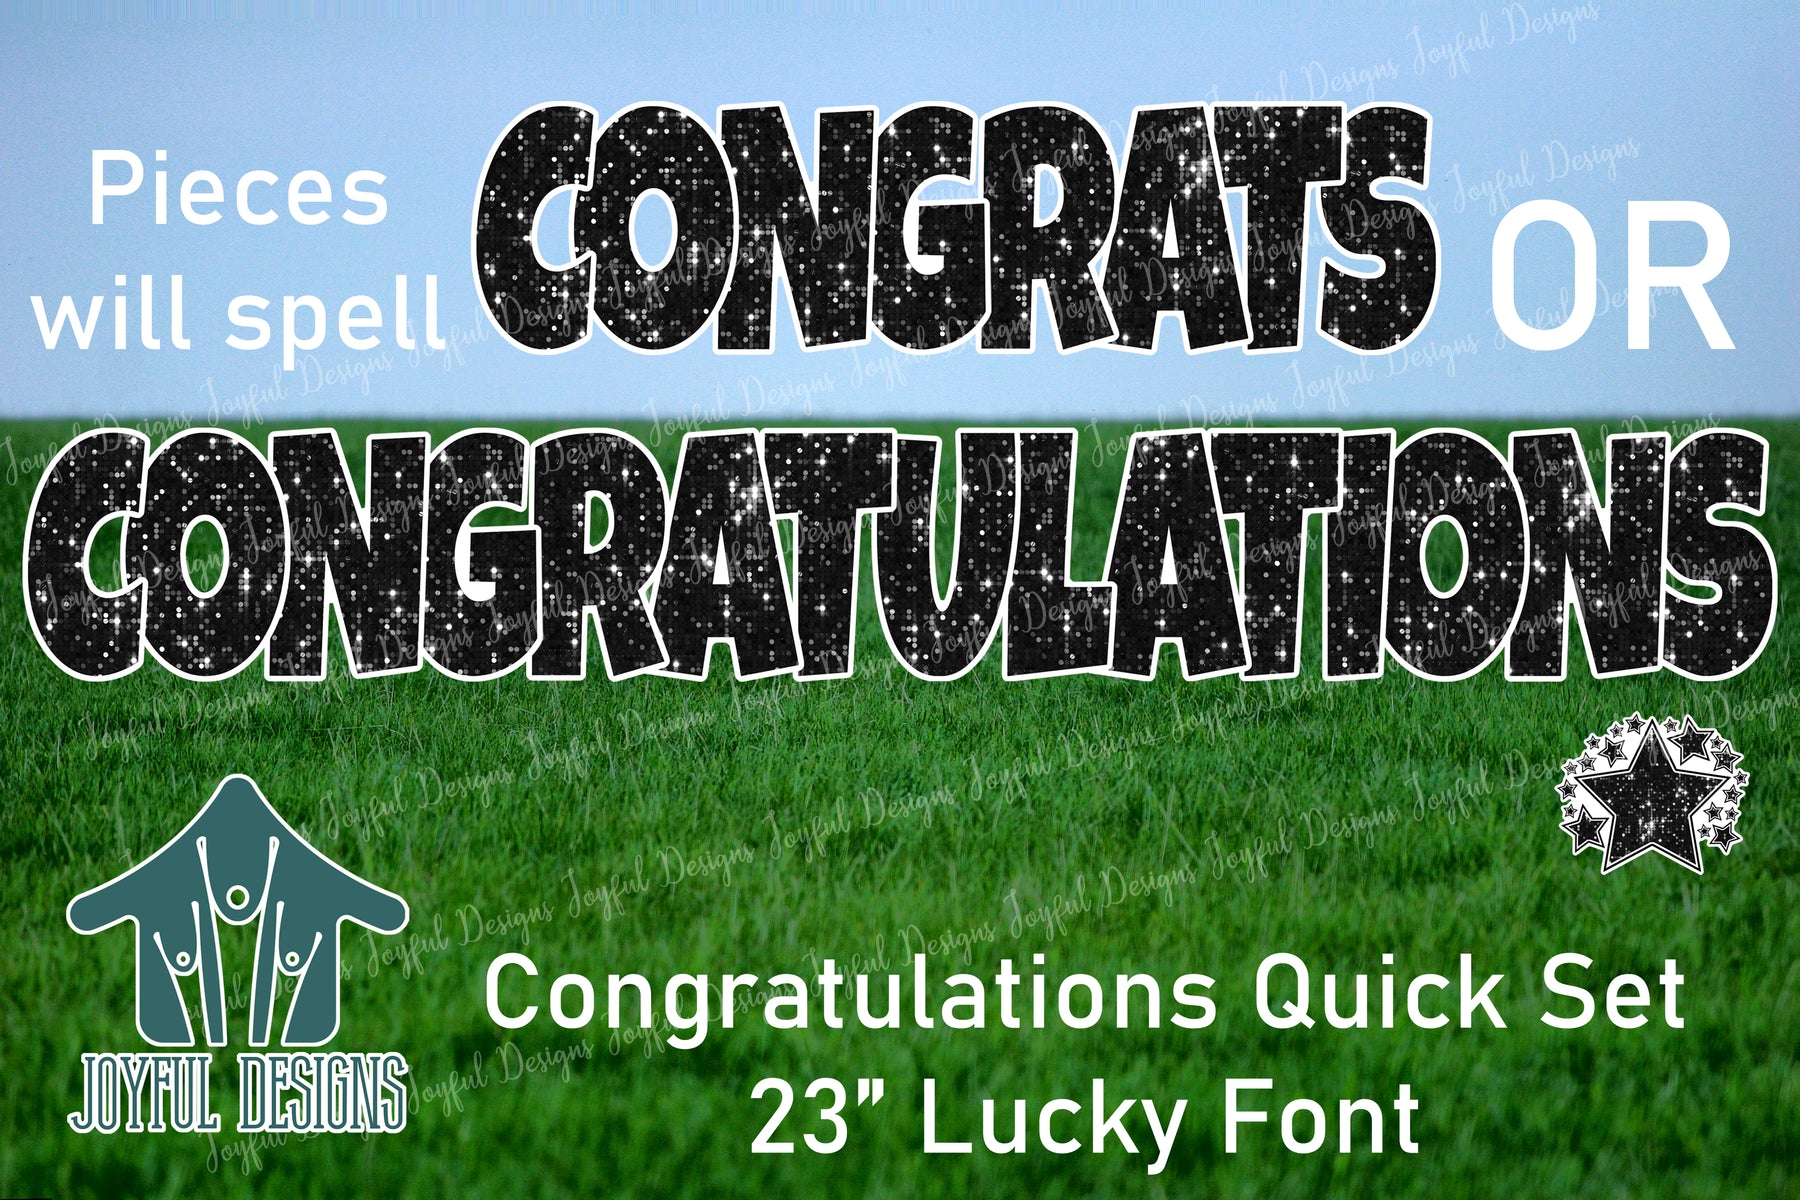 23" Congratulations Quick Set - Lucky Font